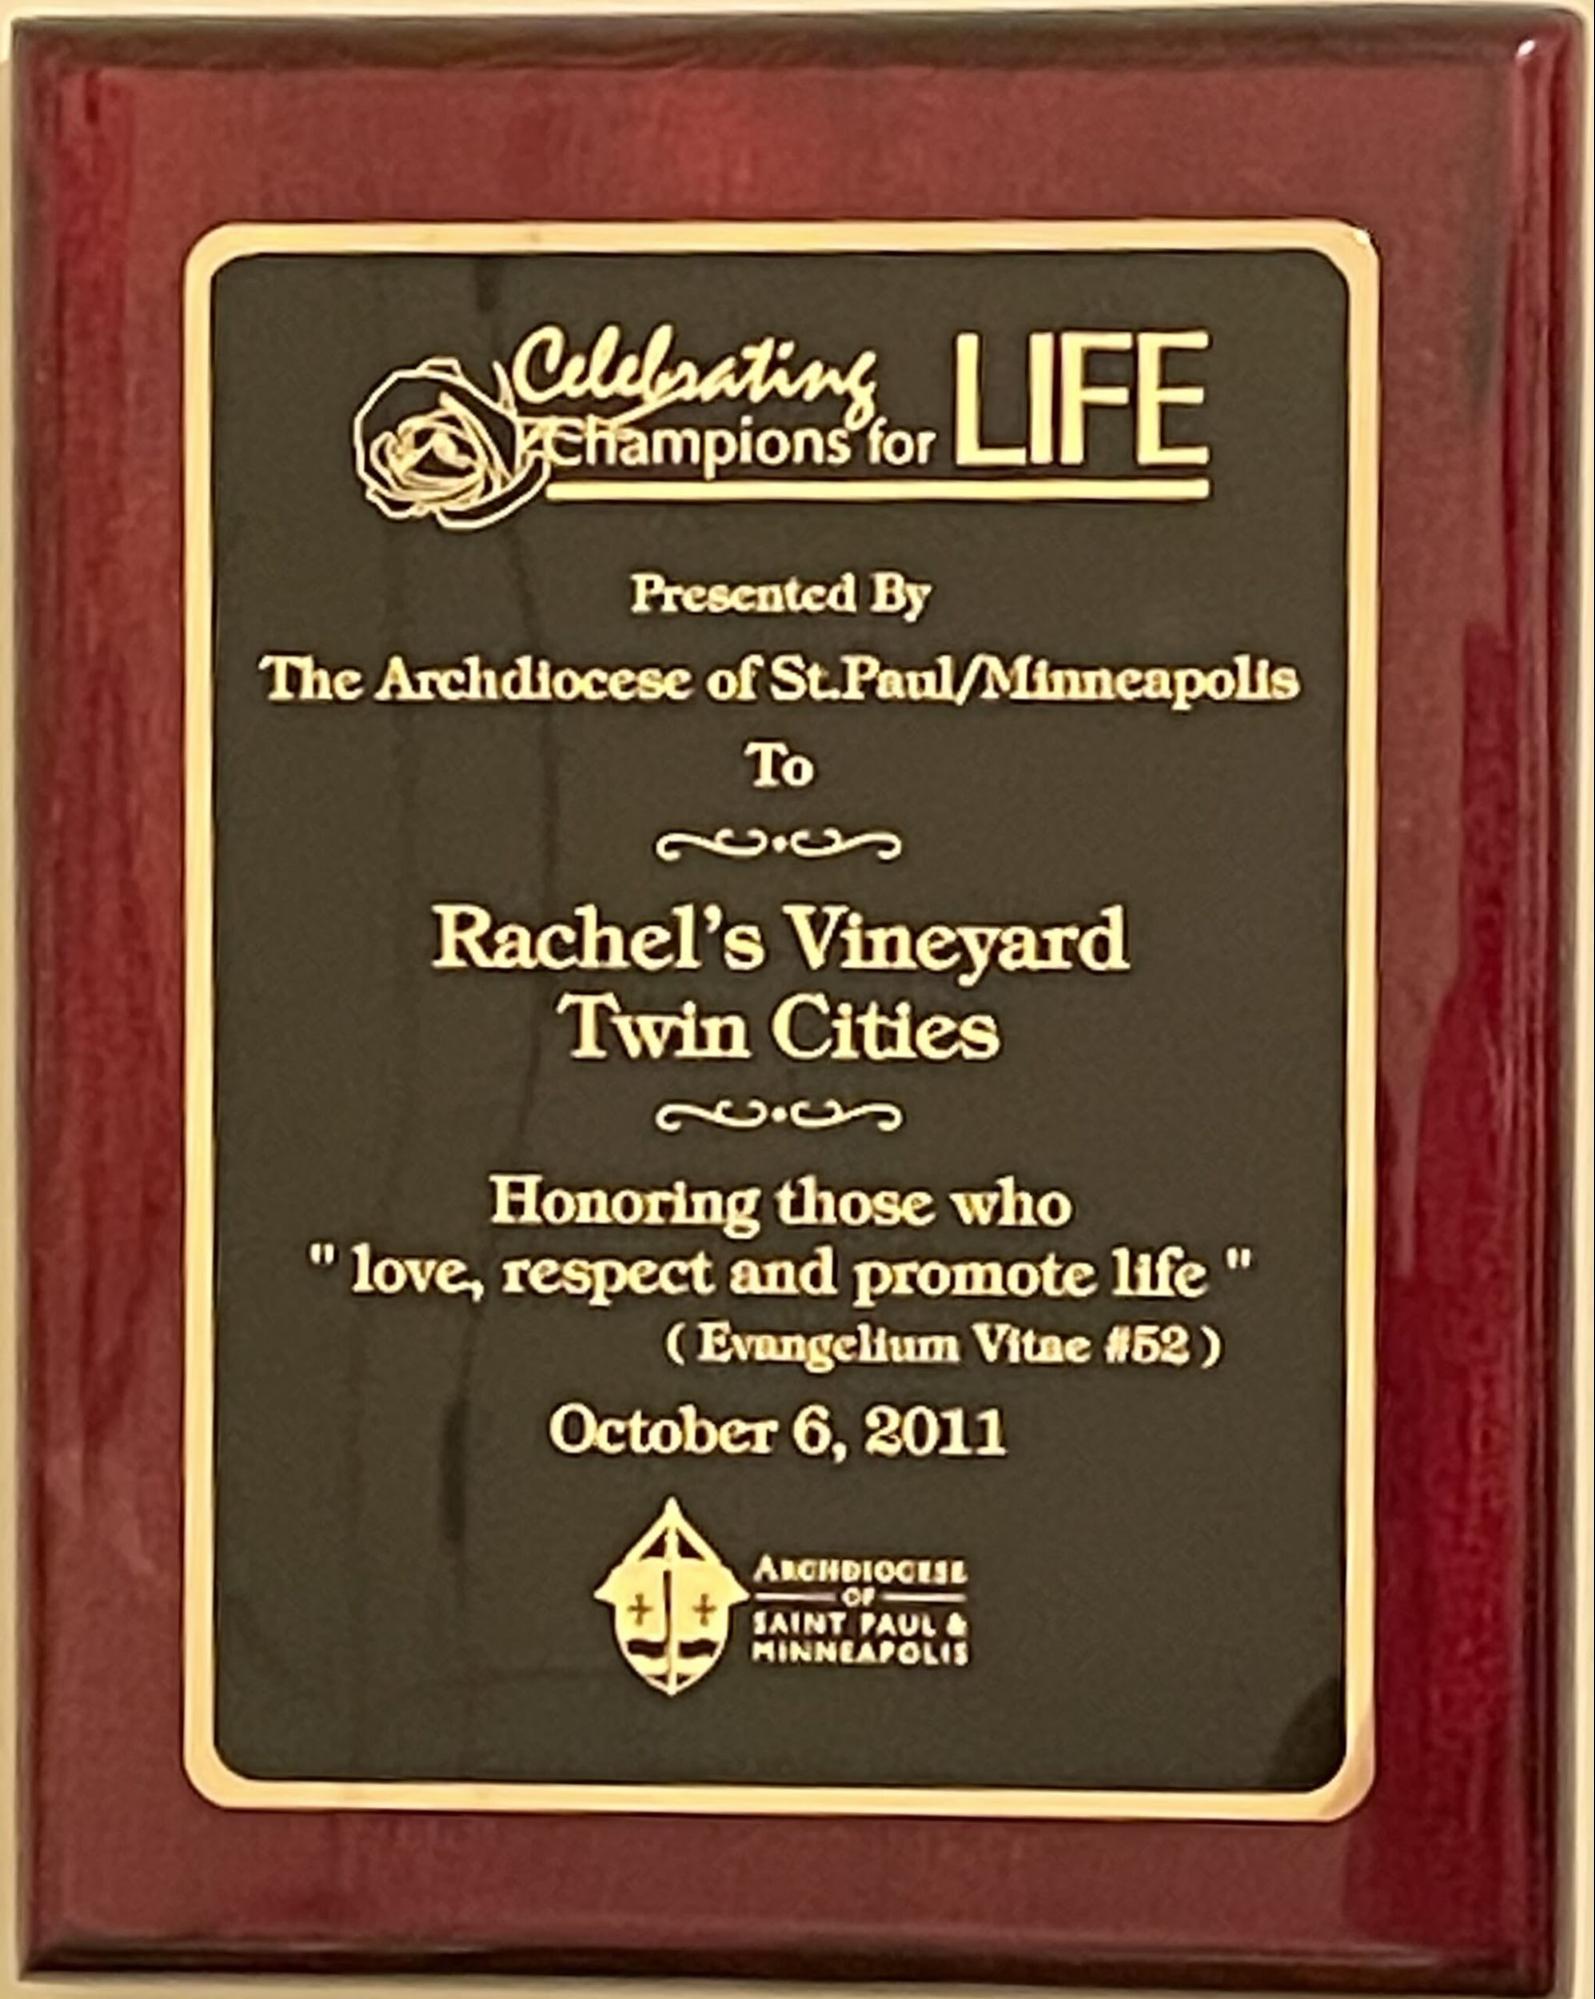 Rachel's Vineyard Twin Cities - History